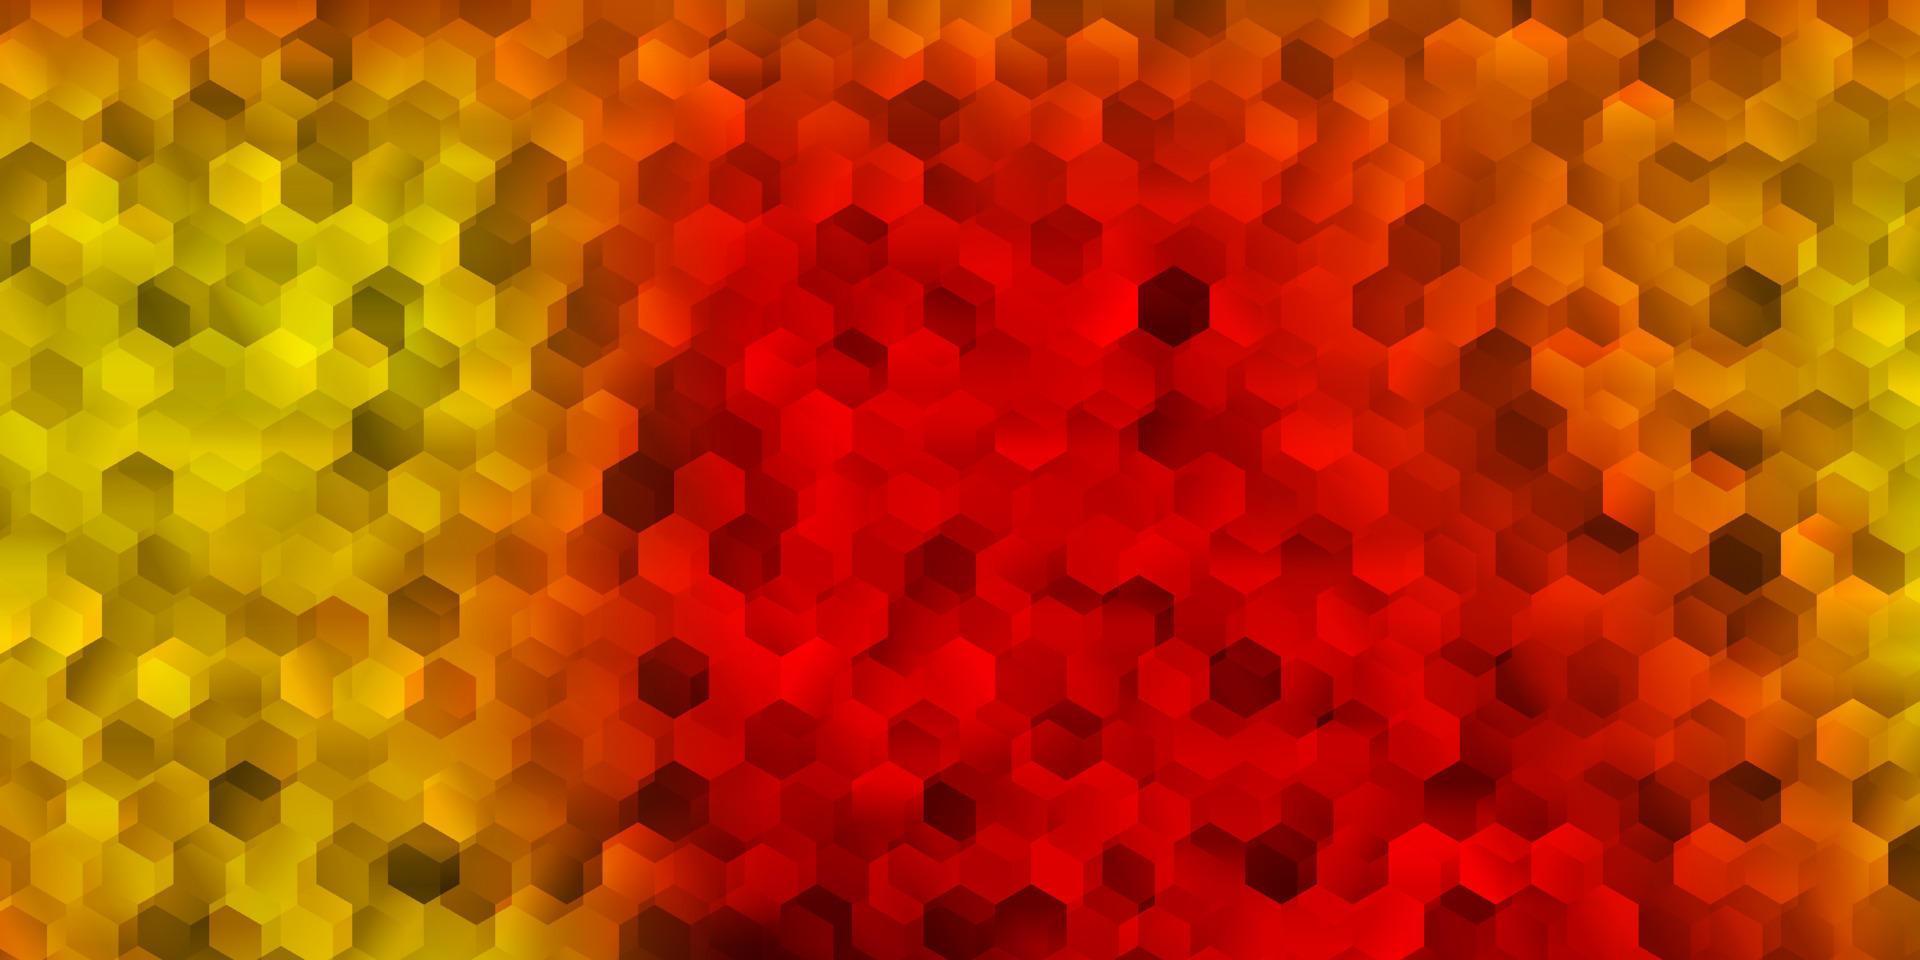 ljus röd, gul vektor mall i en hexagonal stil.